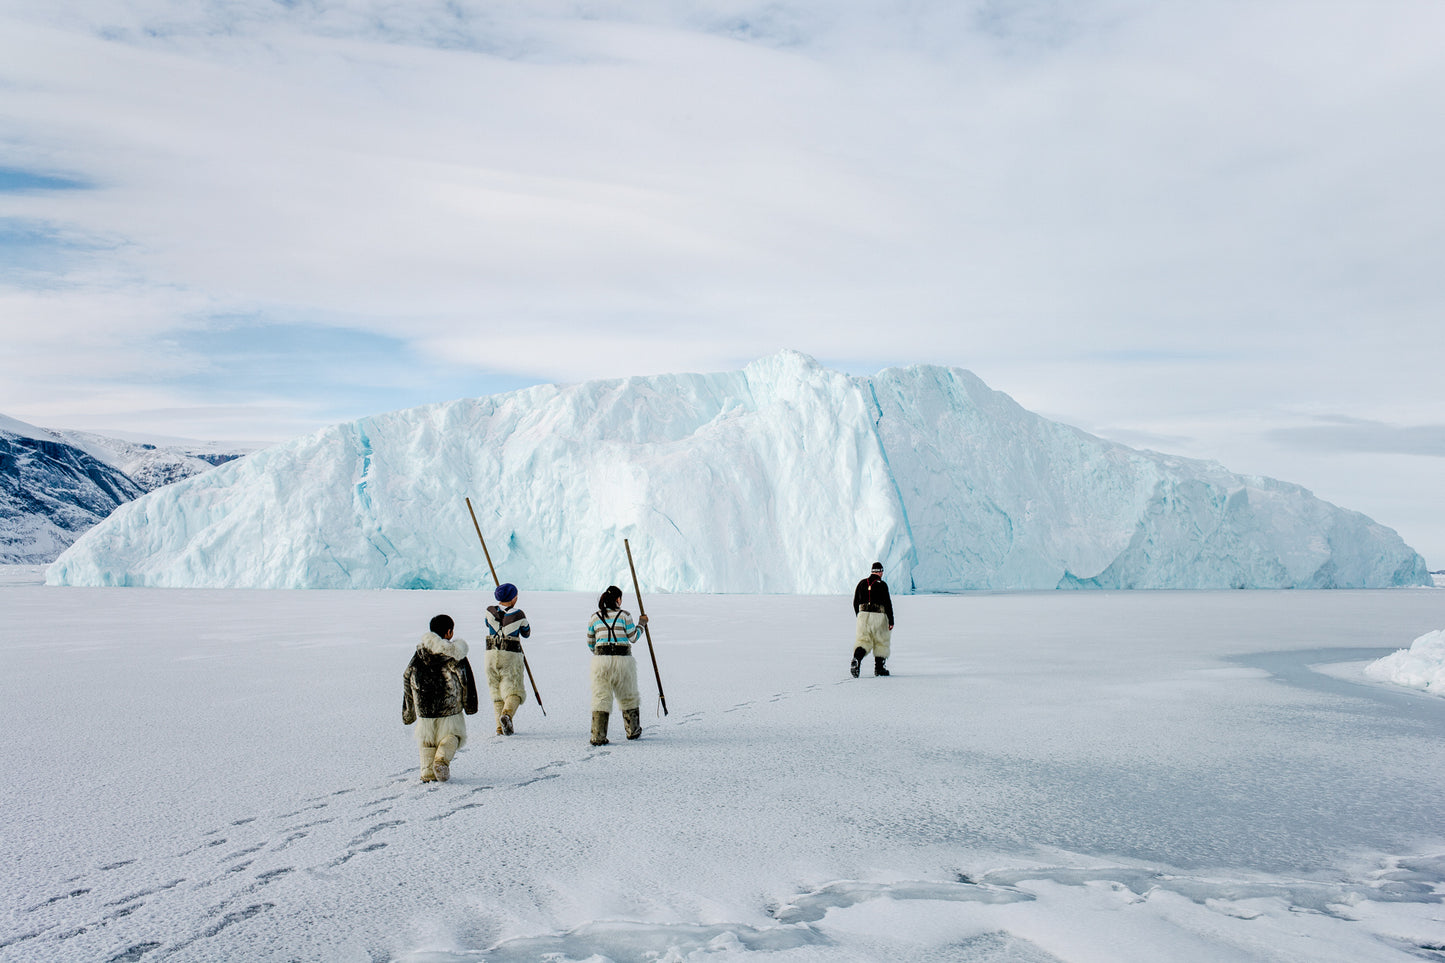 CIRIL JAZBEC - On Thin Ice 008, 2014